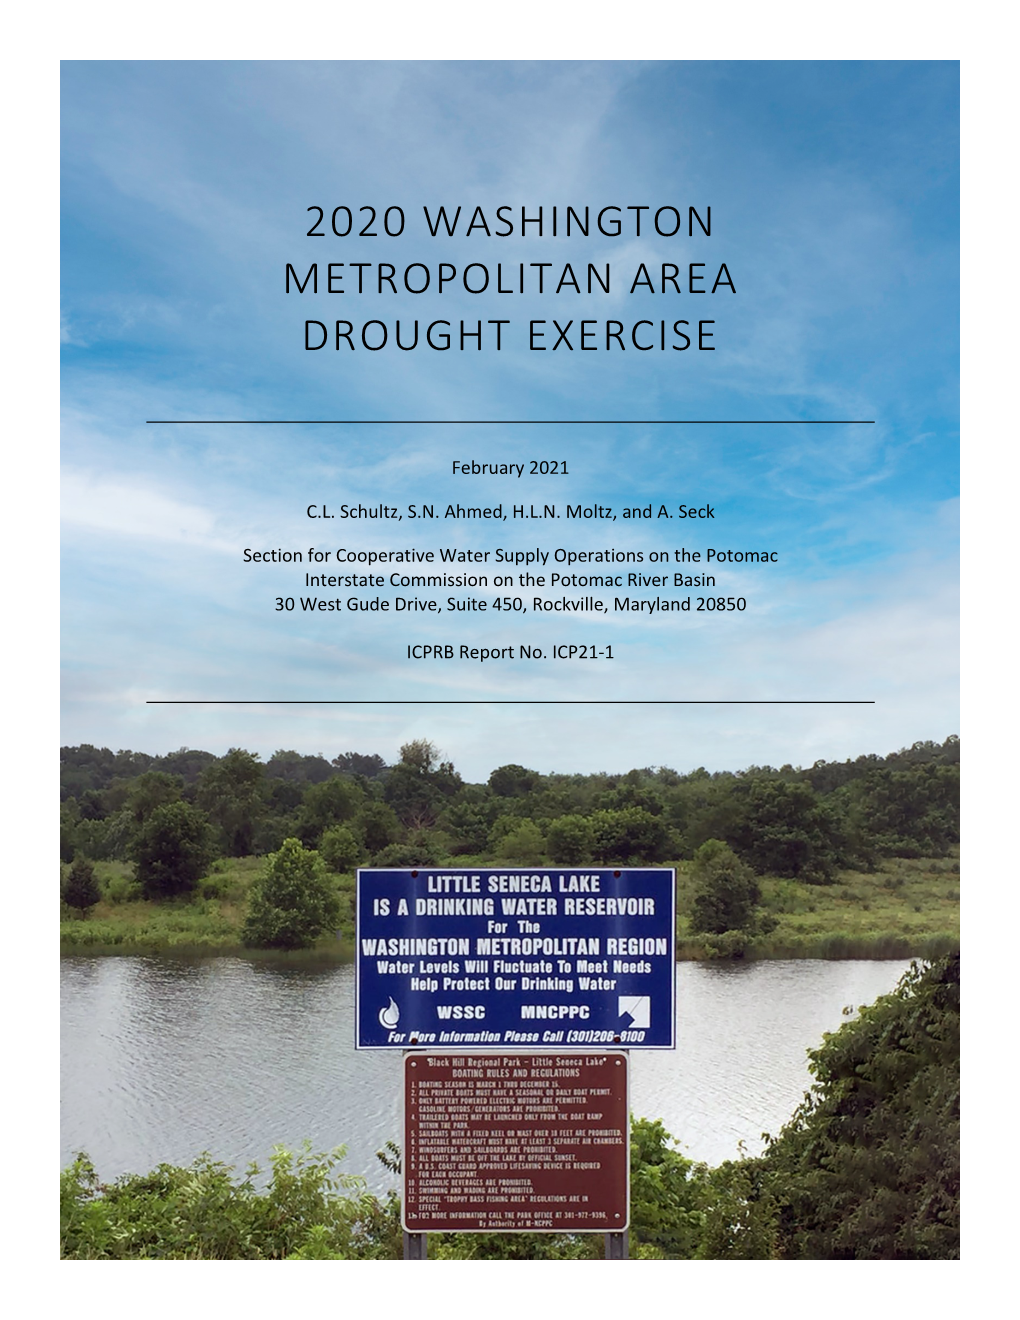 2020 Washington Metropolitan Area Drought Exercise